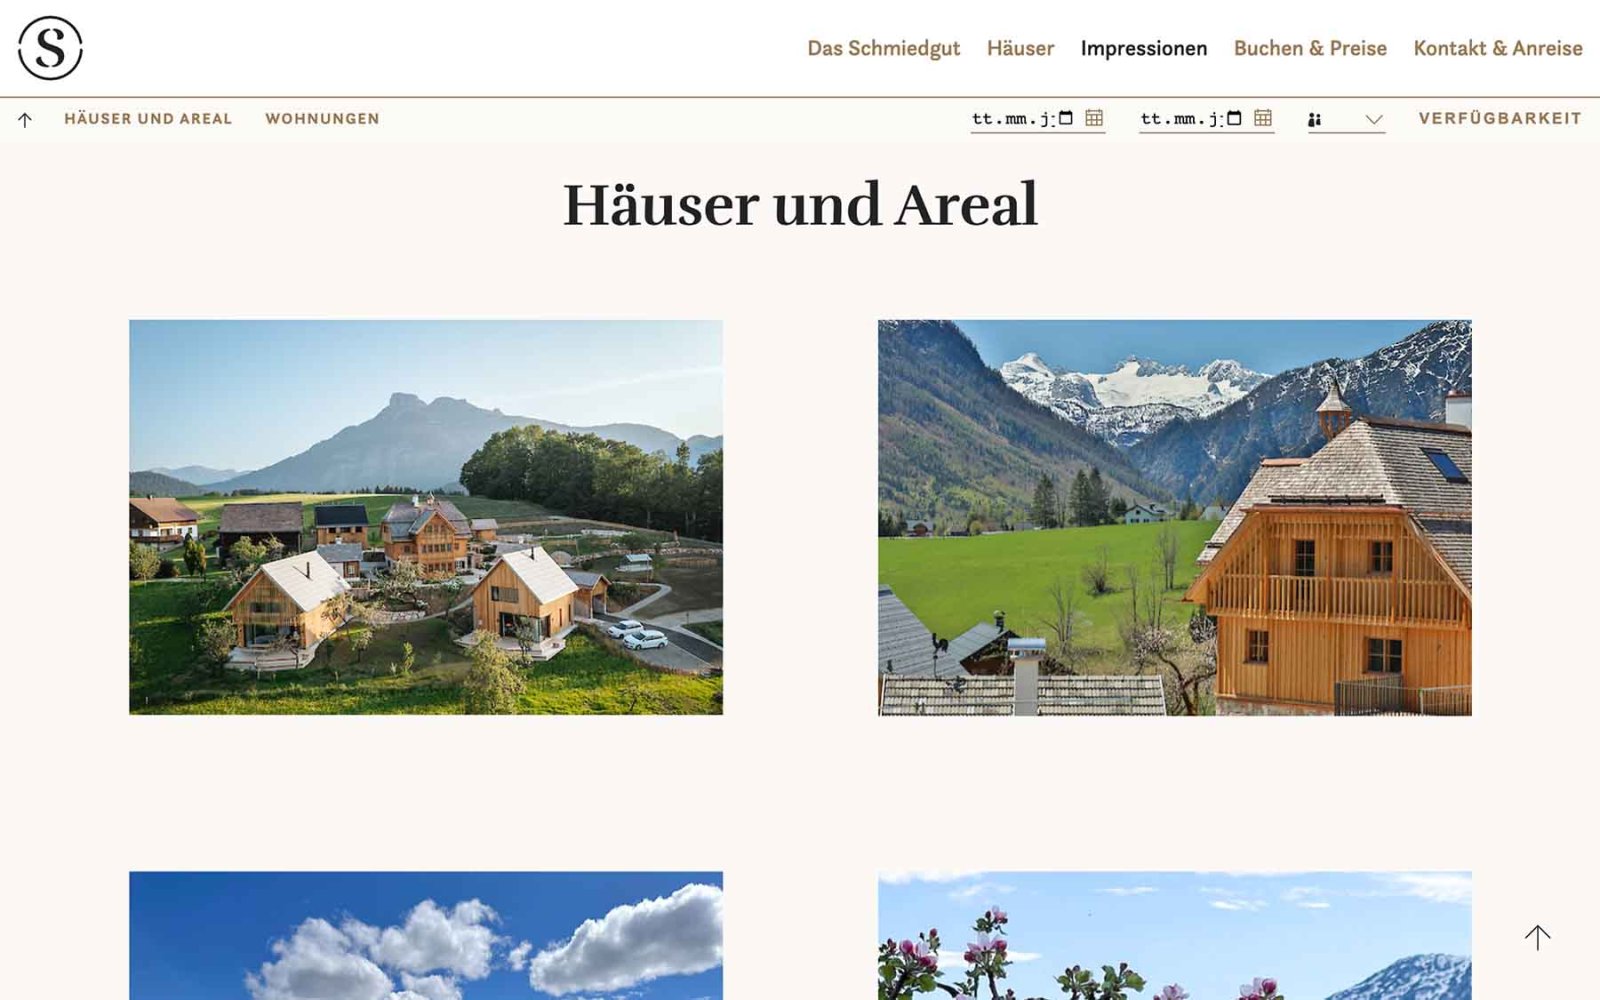 Website-Unterseite mit Impressionen zum Schmiedgut Bad Aussee